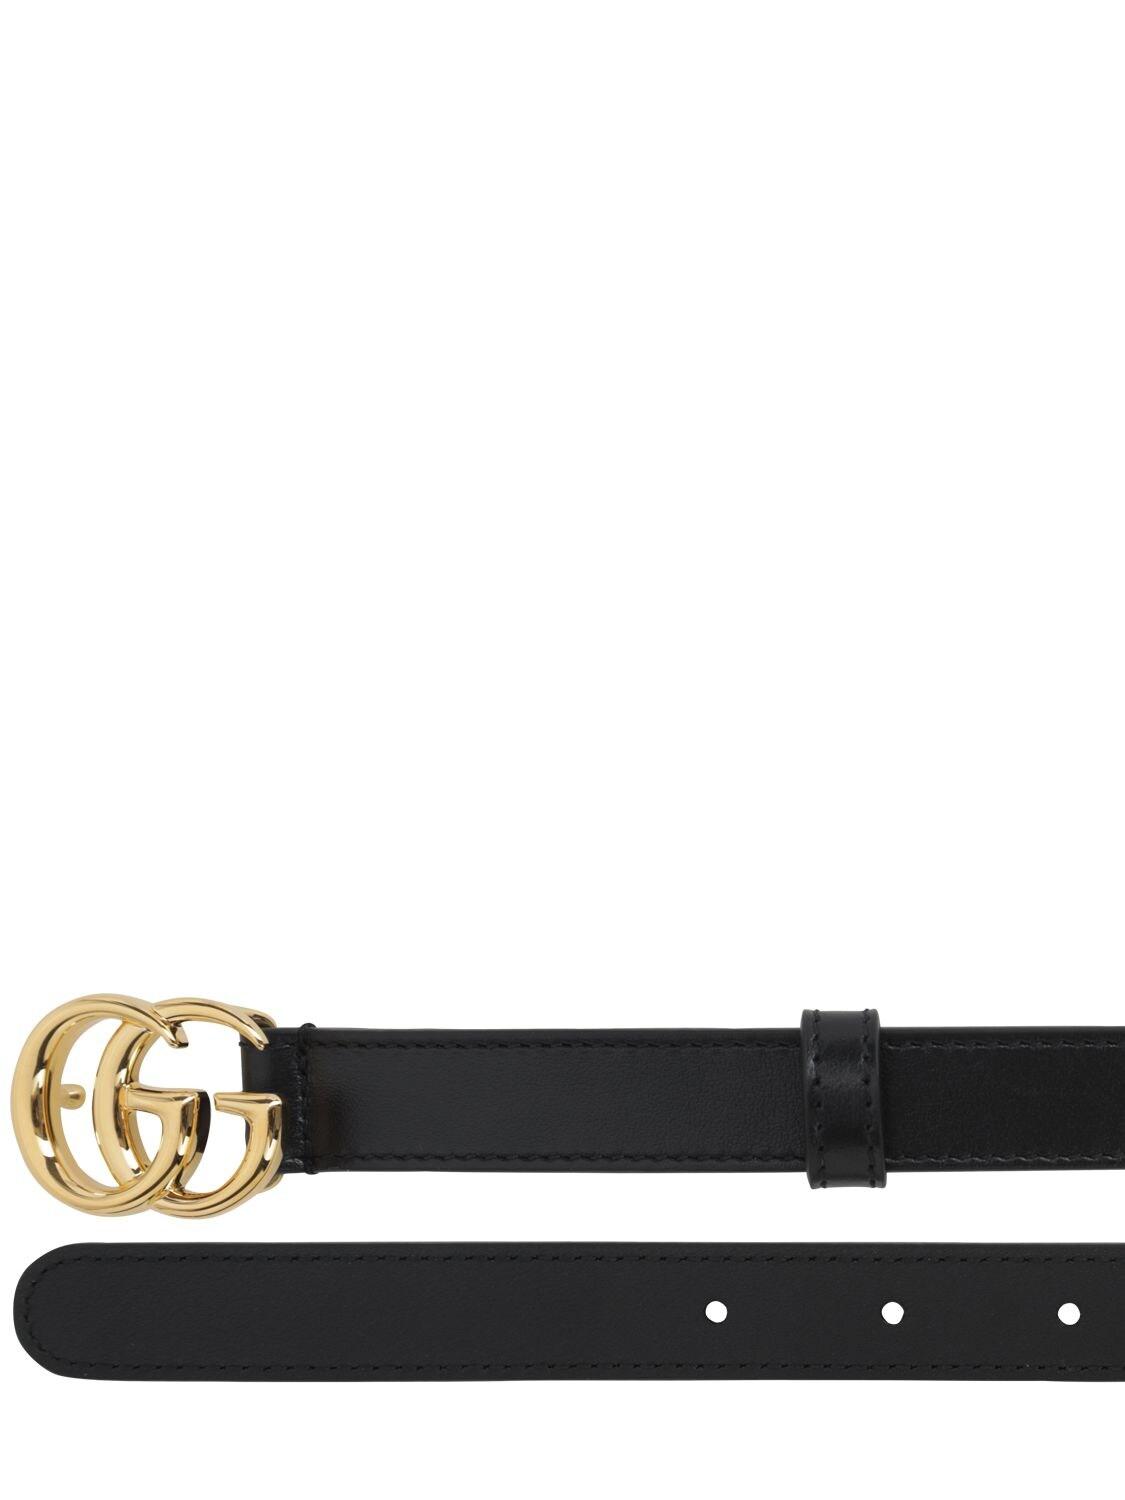 Gucci Leder Gürtel aus leder mit doppel g schnalle mit gewundener struktur  in Schwarz für Herren - Sparen Sie 21% - Lyst